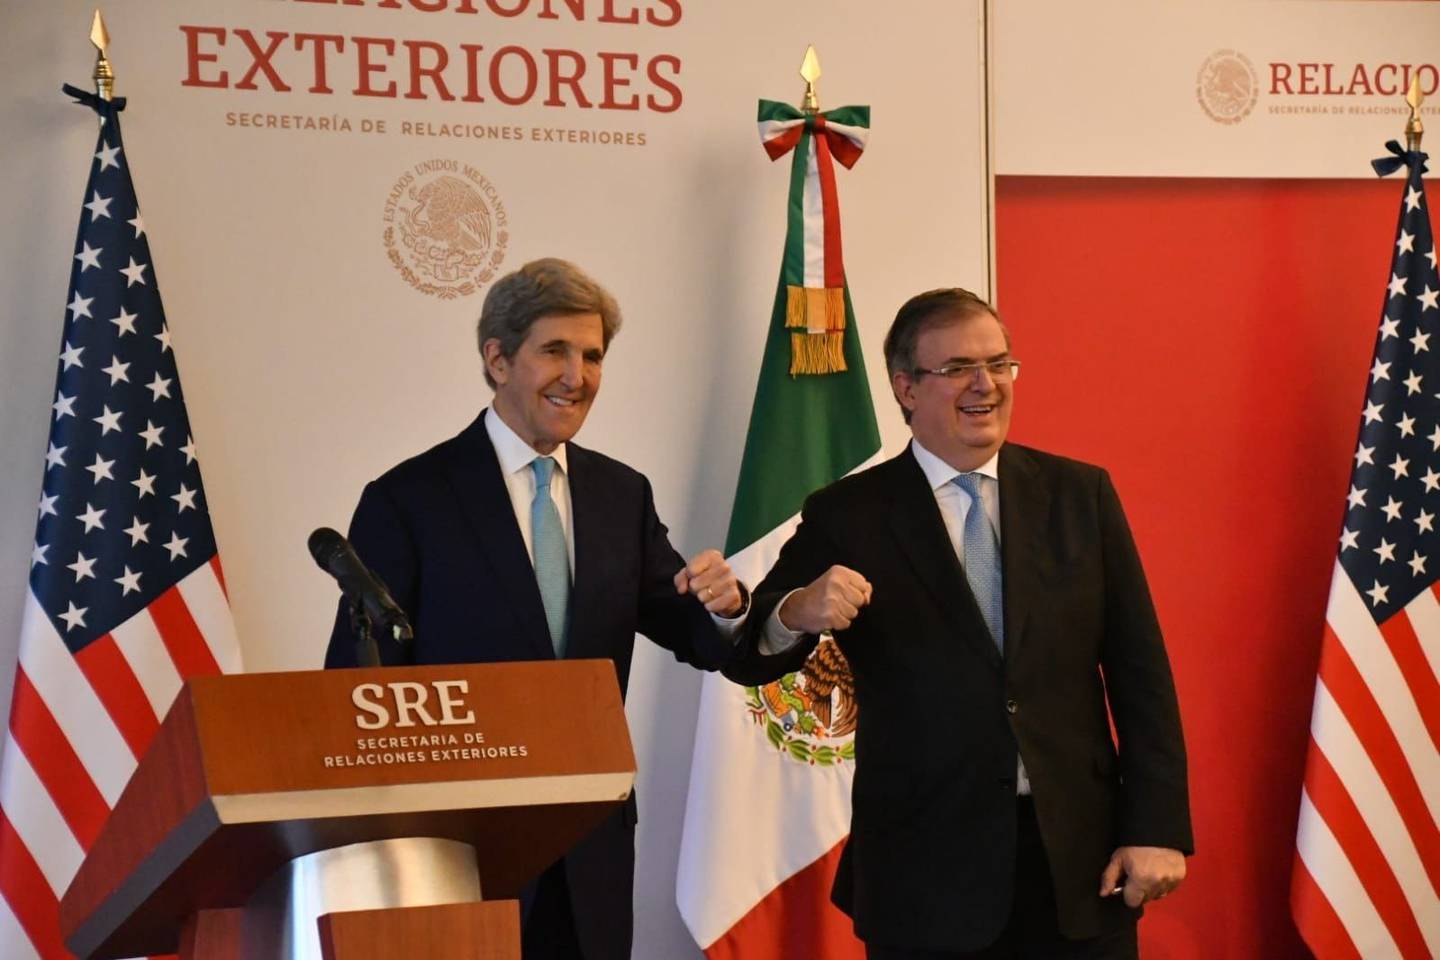 John Kerry, White House Special Presidential Climate Envoy, and Mexico's Foreign Minister Marcelo Ebrard. (Photo: Secretaría de Relaciones Exteriores).dfd